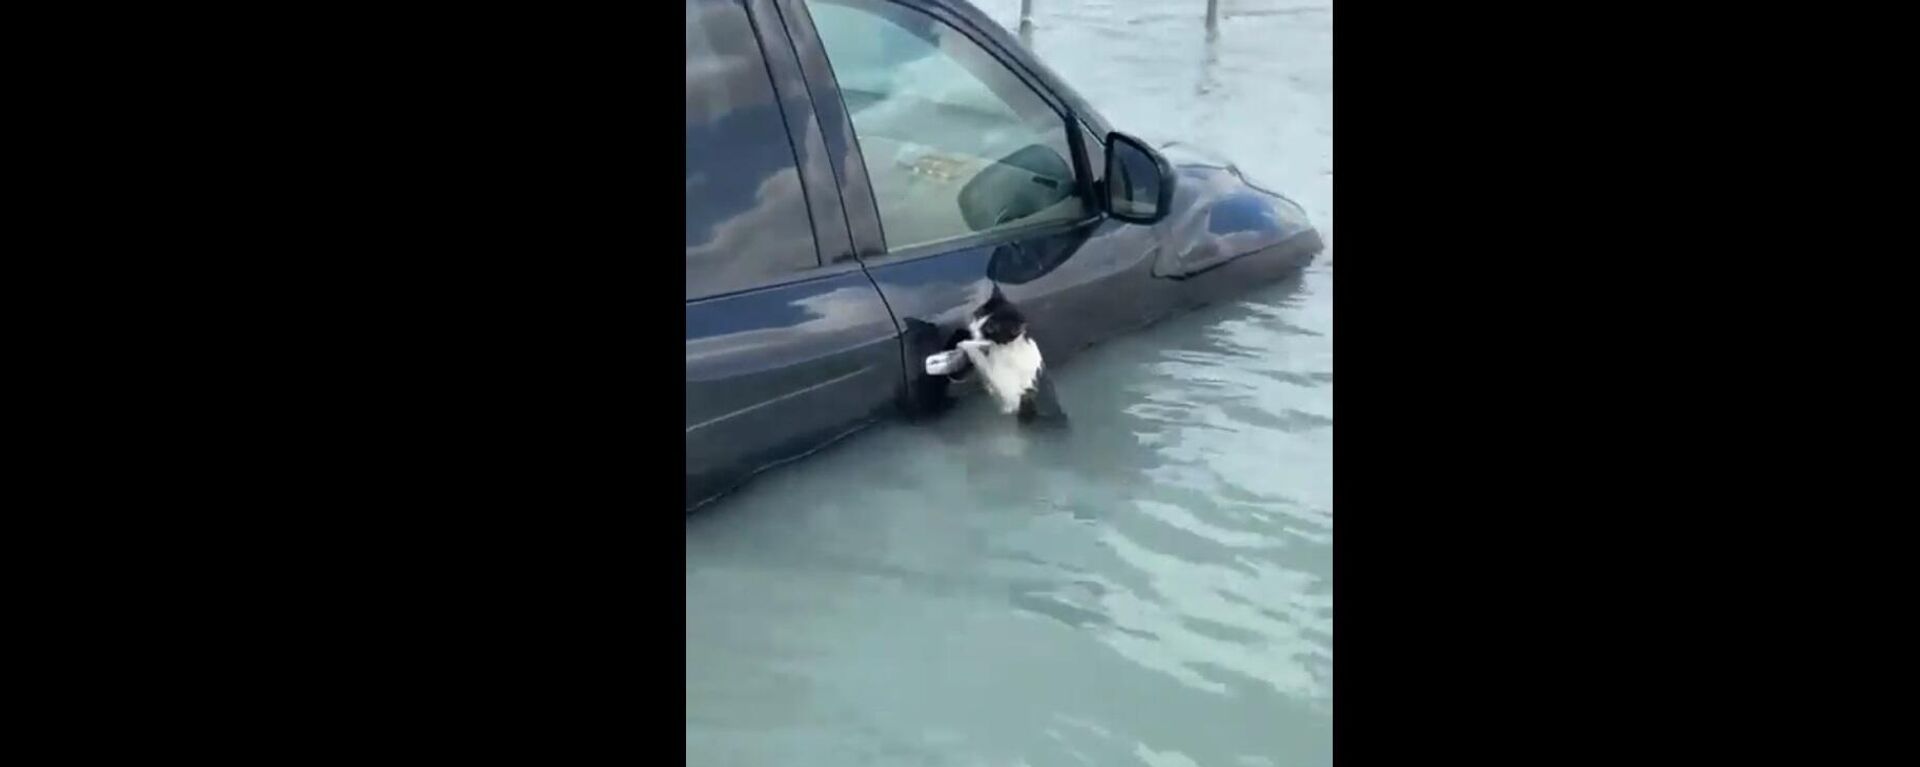 Şiddetli yağışların etkilediği Dubai'da sudan kaçmak için bir arabanın kaprısına asılan bir kedinin kurtarılma anı Dubai'de her hayat önemlidir notuyla paylaşıldı.   - Sputnik Türkiye, 1920, 17.04.2024